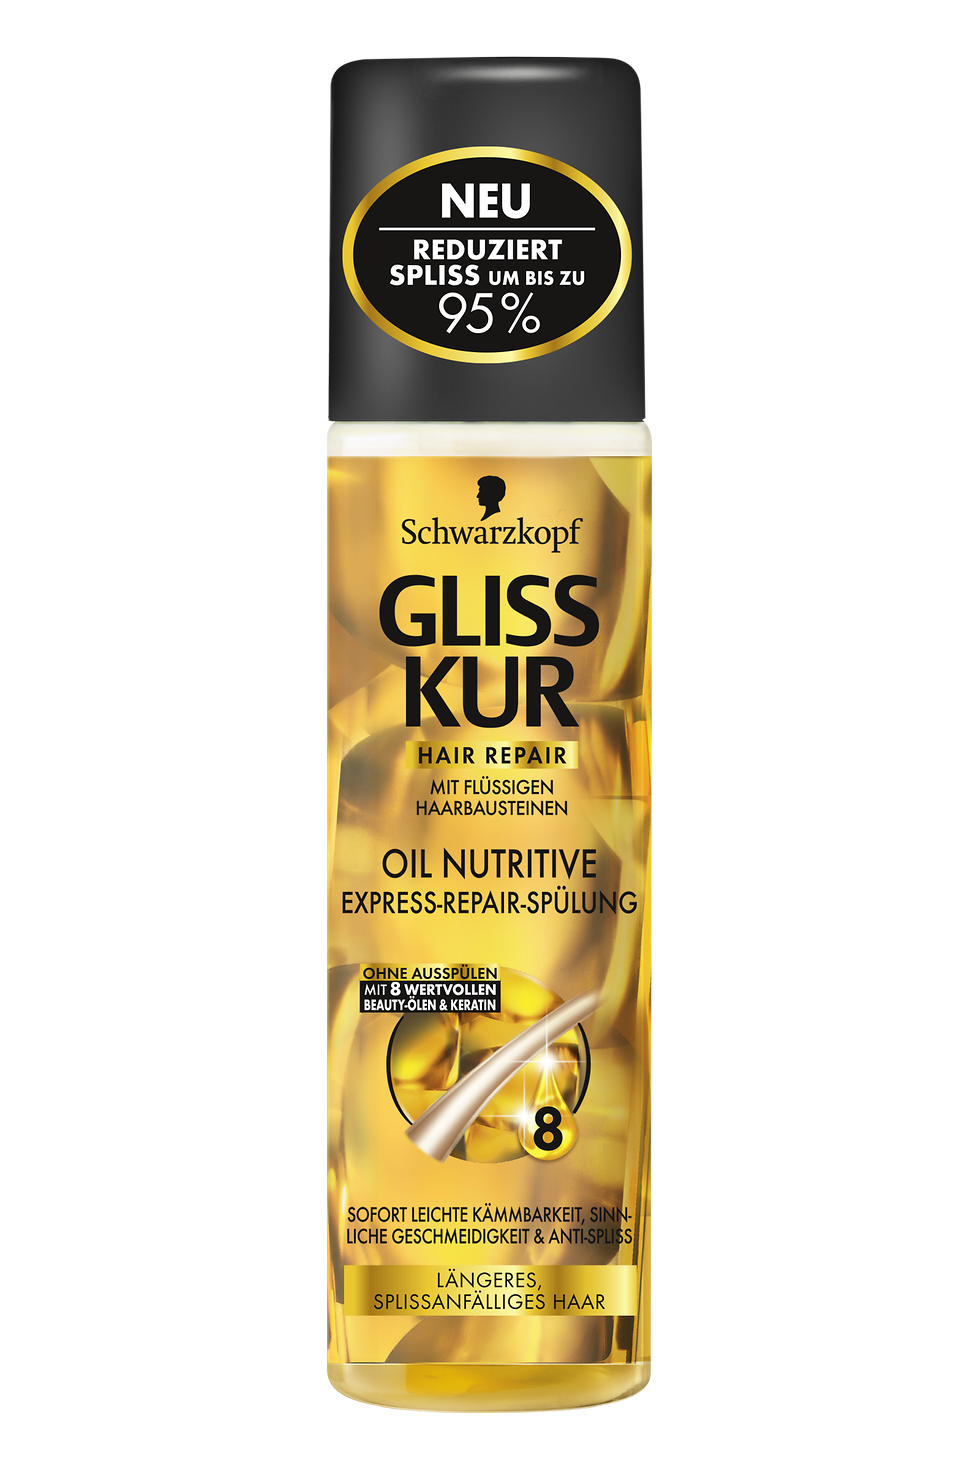 Gliss Kur Oil Nutritive Express-Repair-Spülung